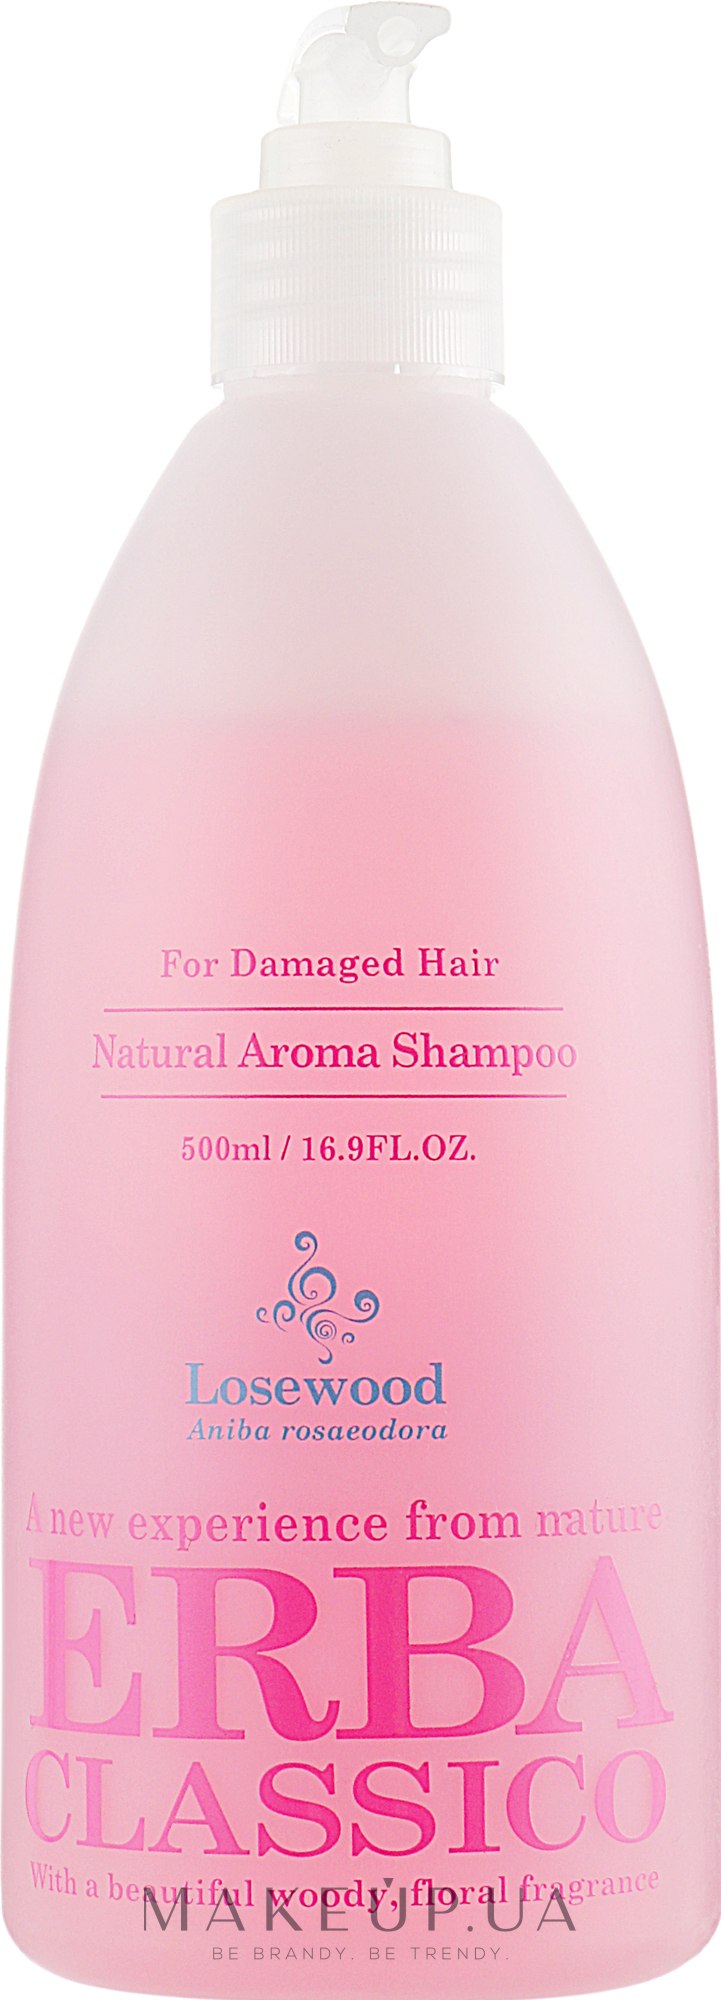 Шампунь для волос с экстрактом розового дерева - Erba Classico Rosewood Hair Shampoo — фото 500ml